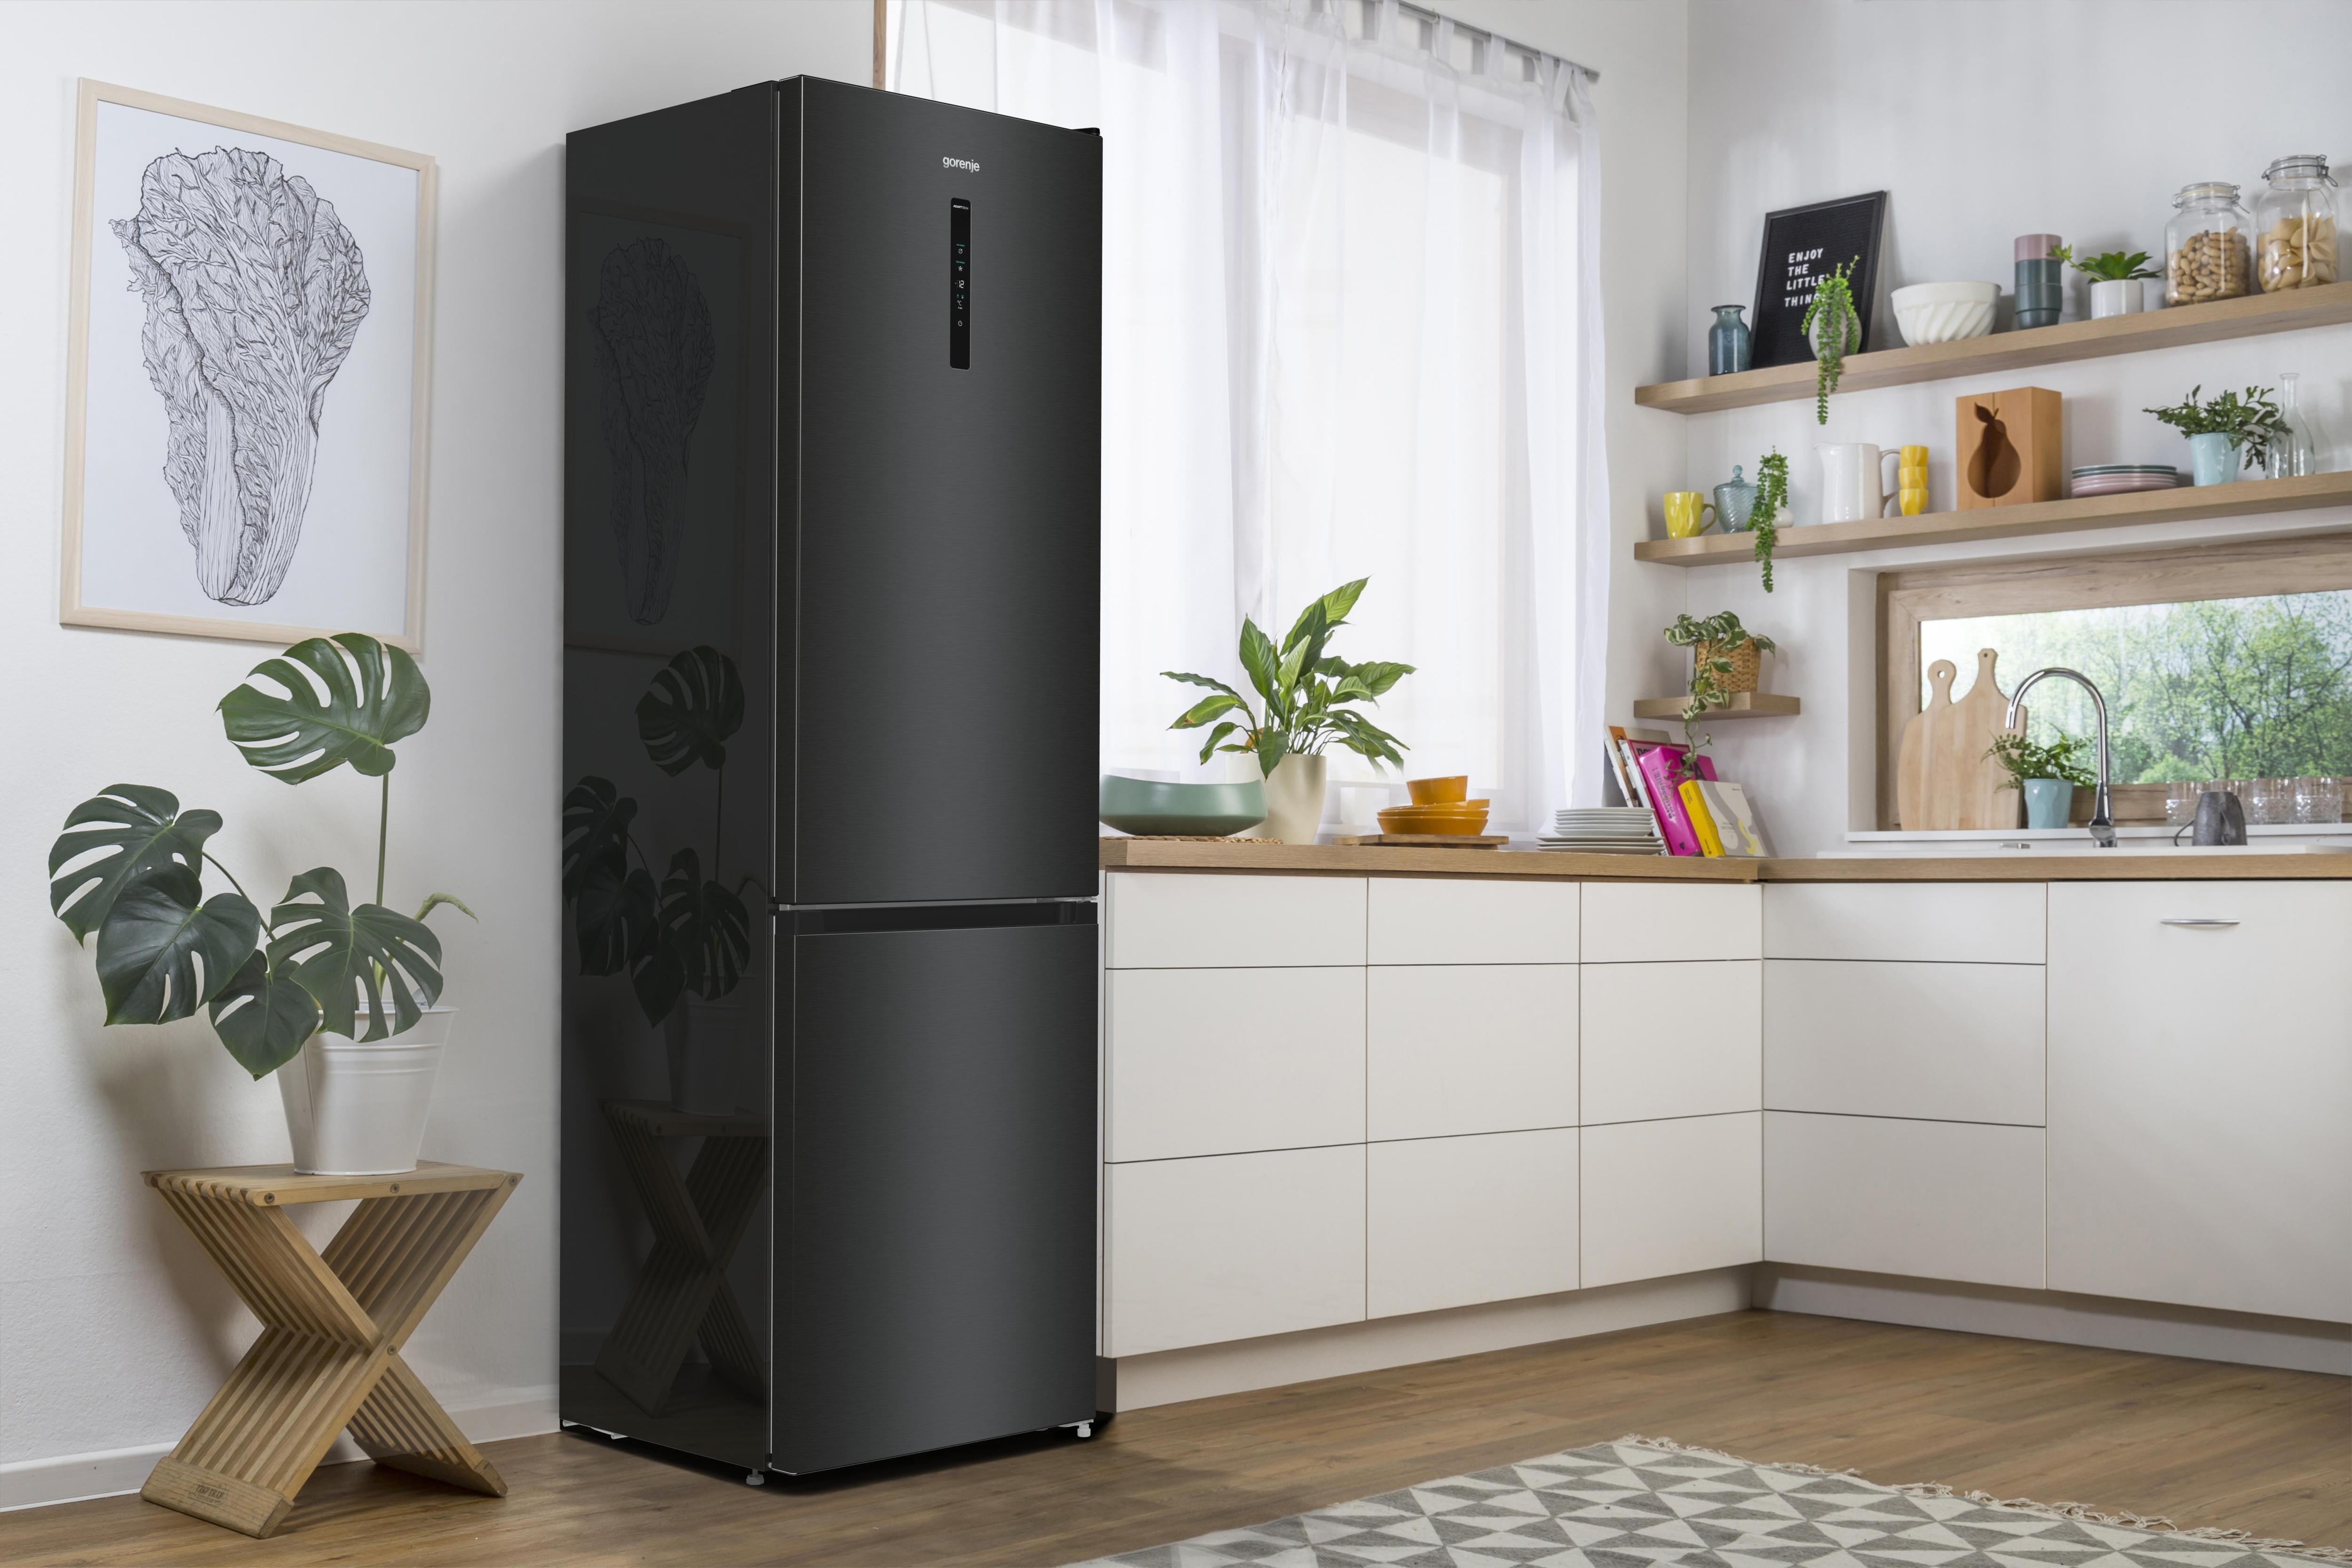 Красивые холодильники: ретро, классика и гламур | Дизайн, Ретро, Дизайн линия